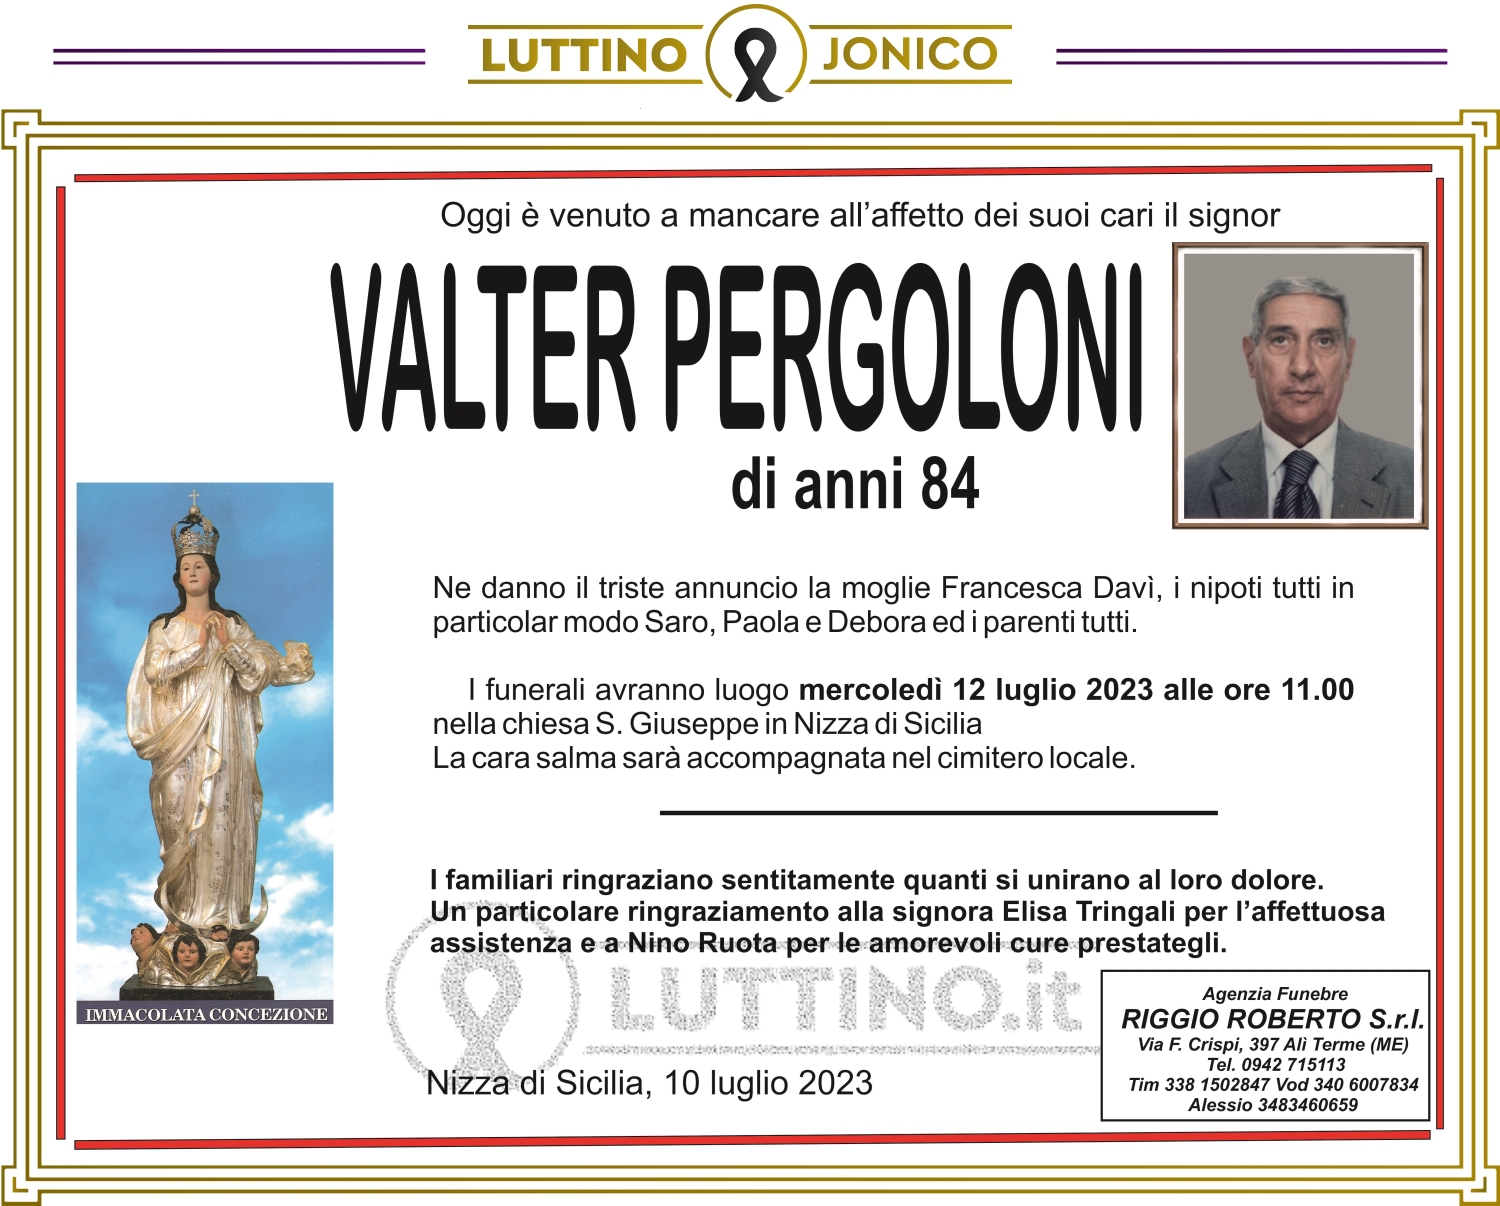 Valter Pergoloni